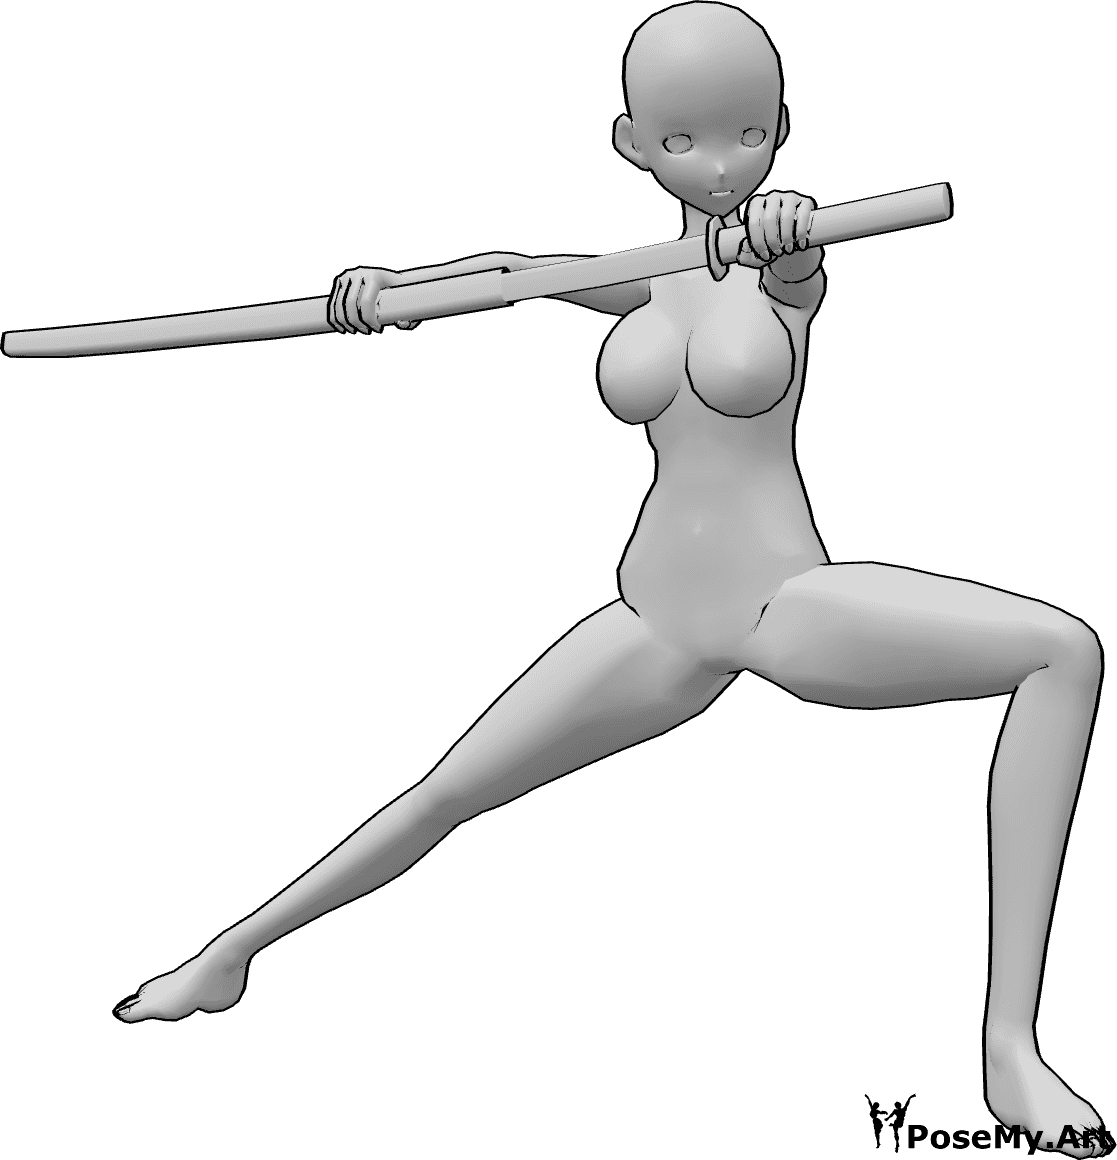 Riferimento alle pose- Posa della katana femminile in stile anime - La donna Anime è semi accovacciata, guarda a sinistra ed estrae lentamente la sua katana dal fodero.